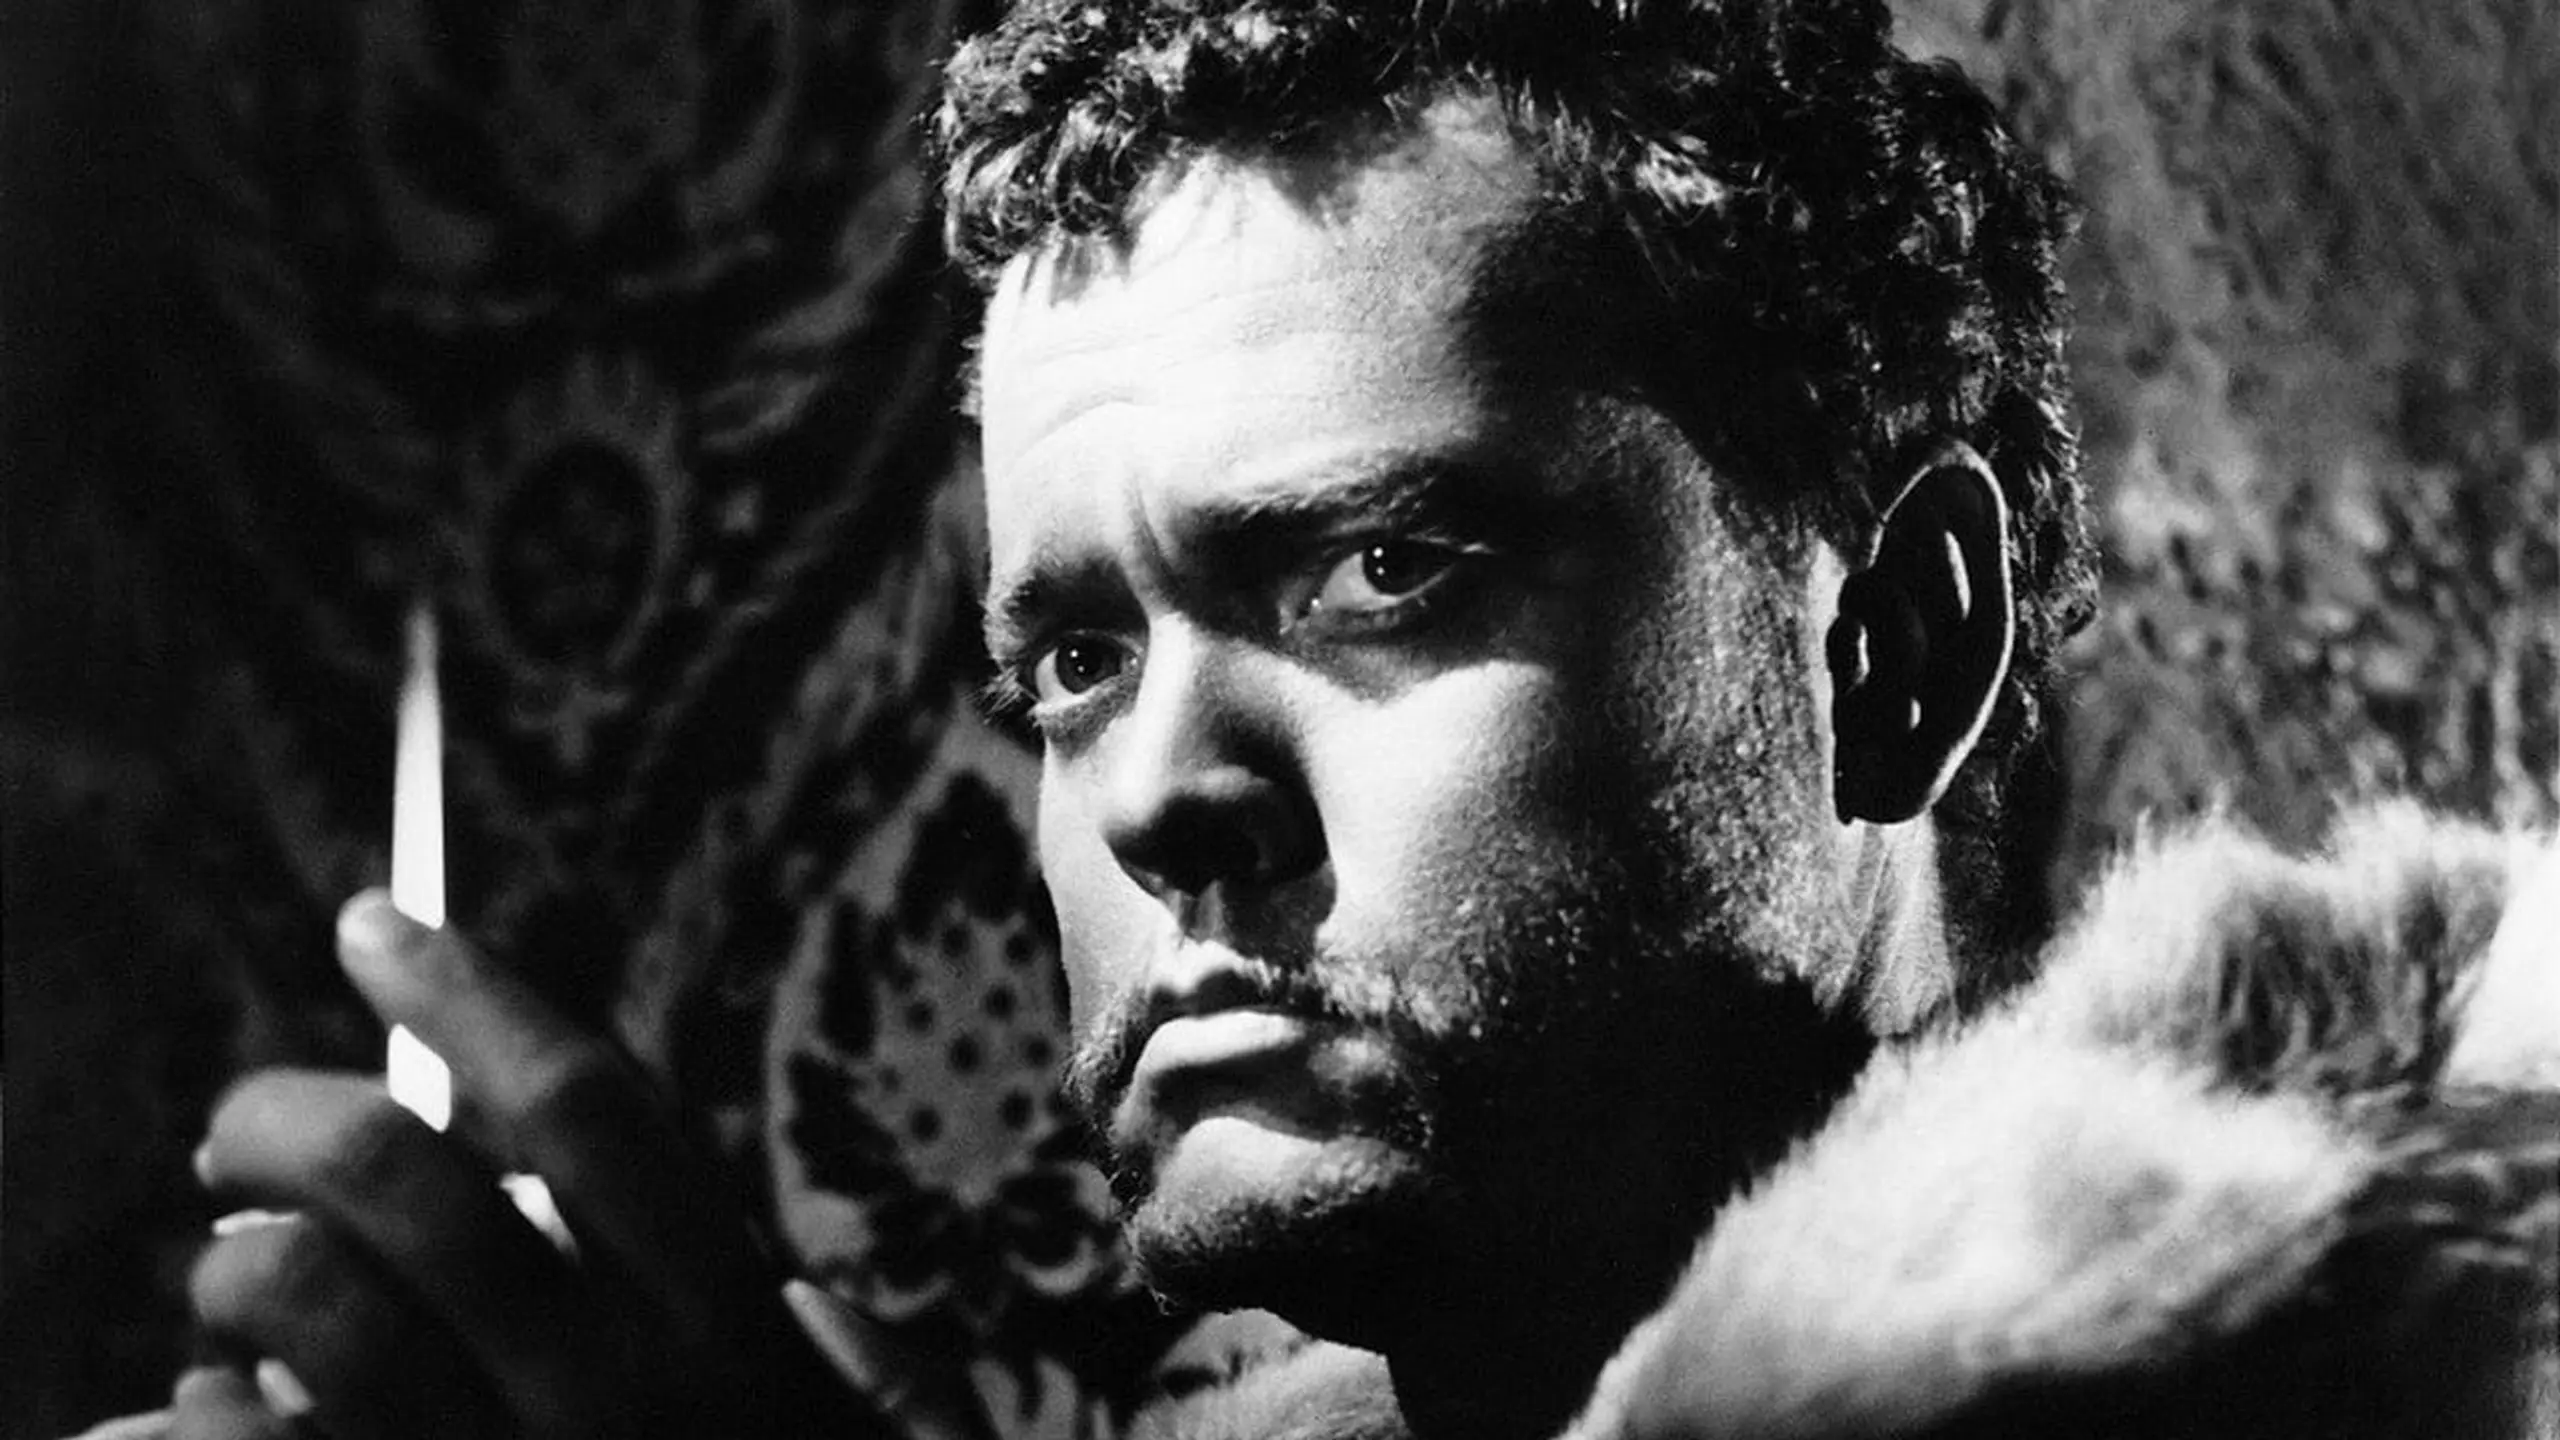 Orson Welles’ Othello